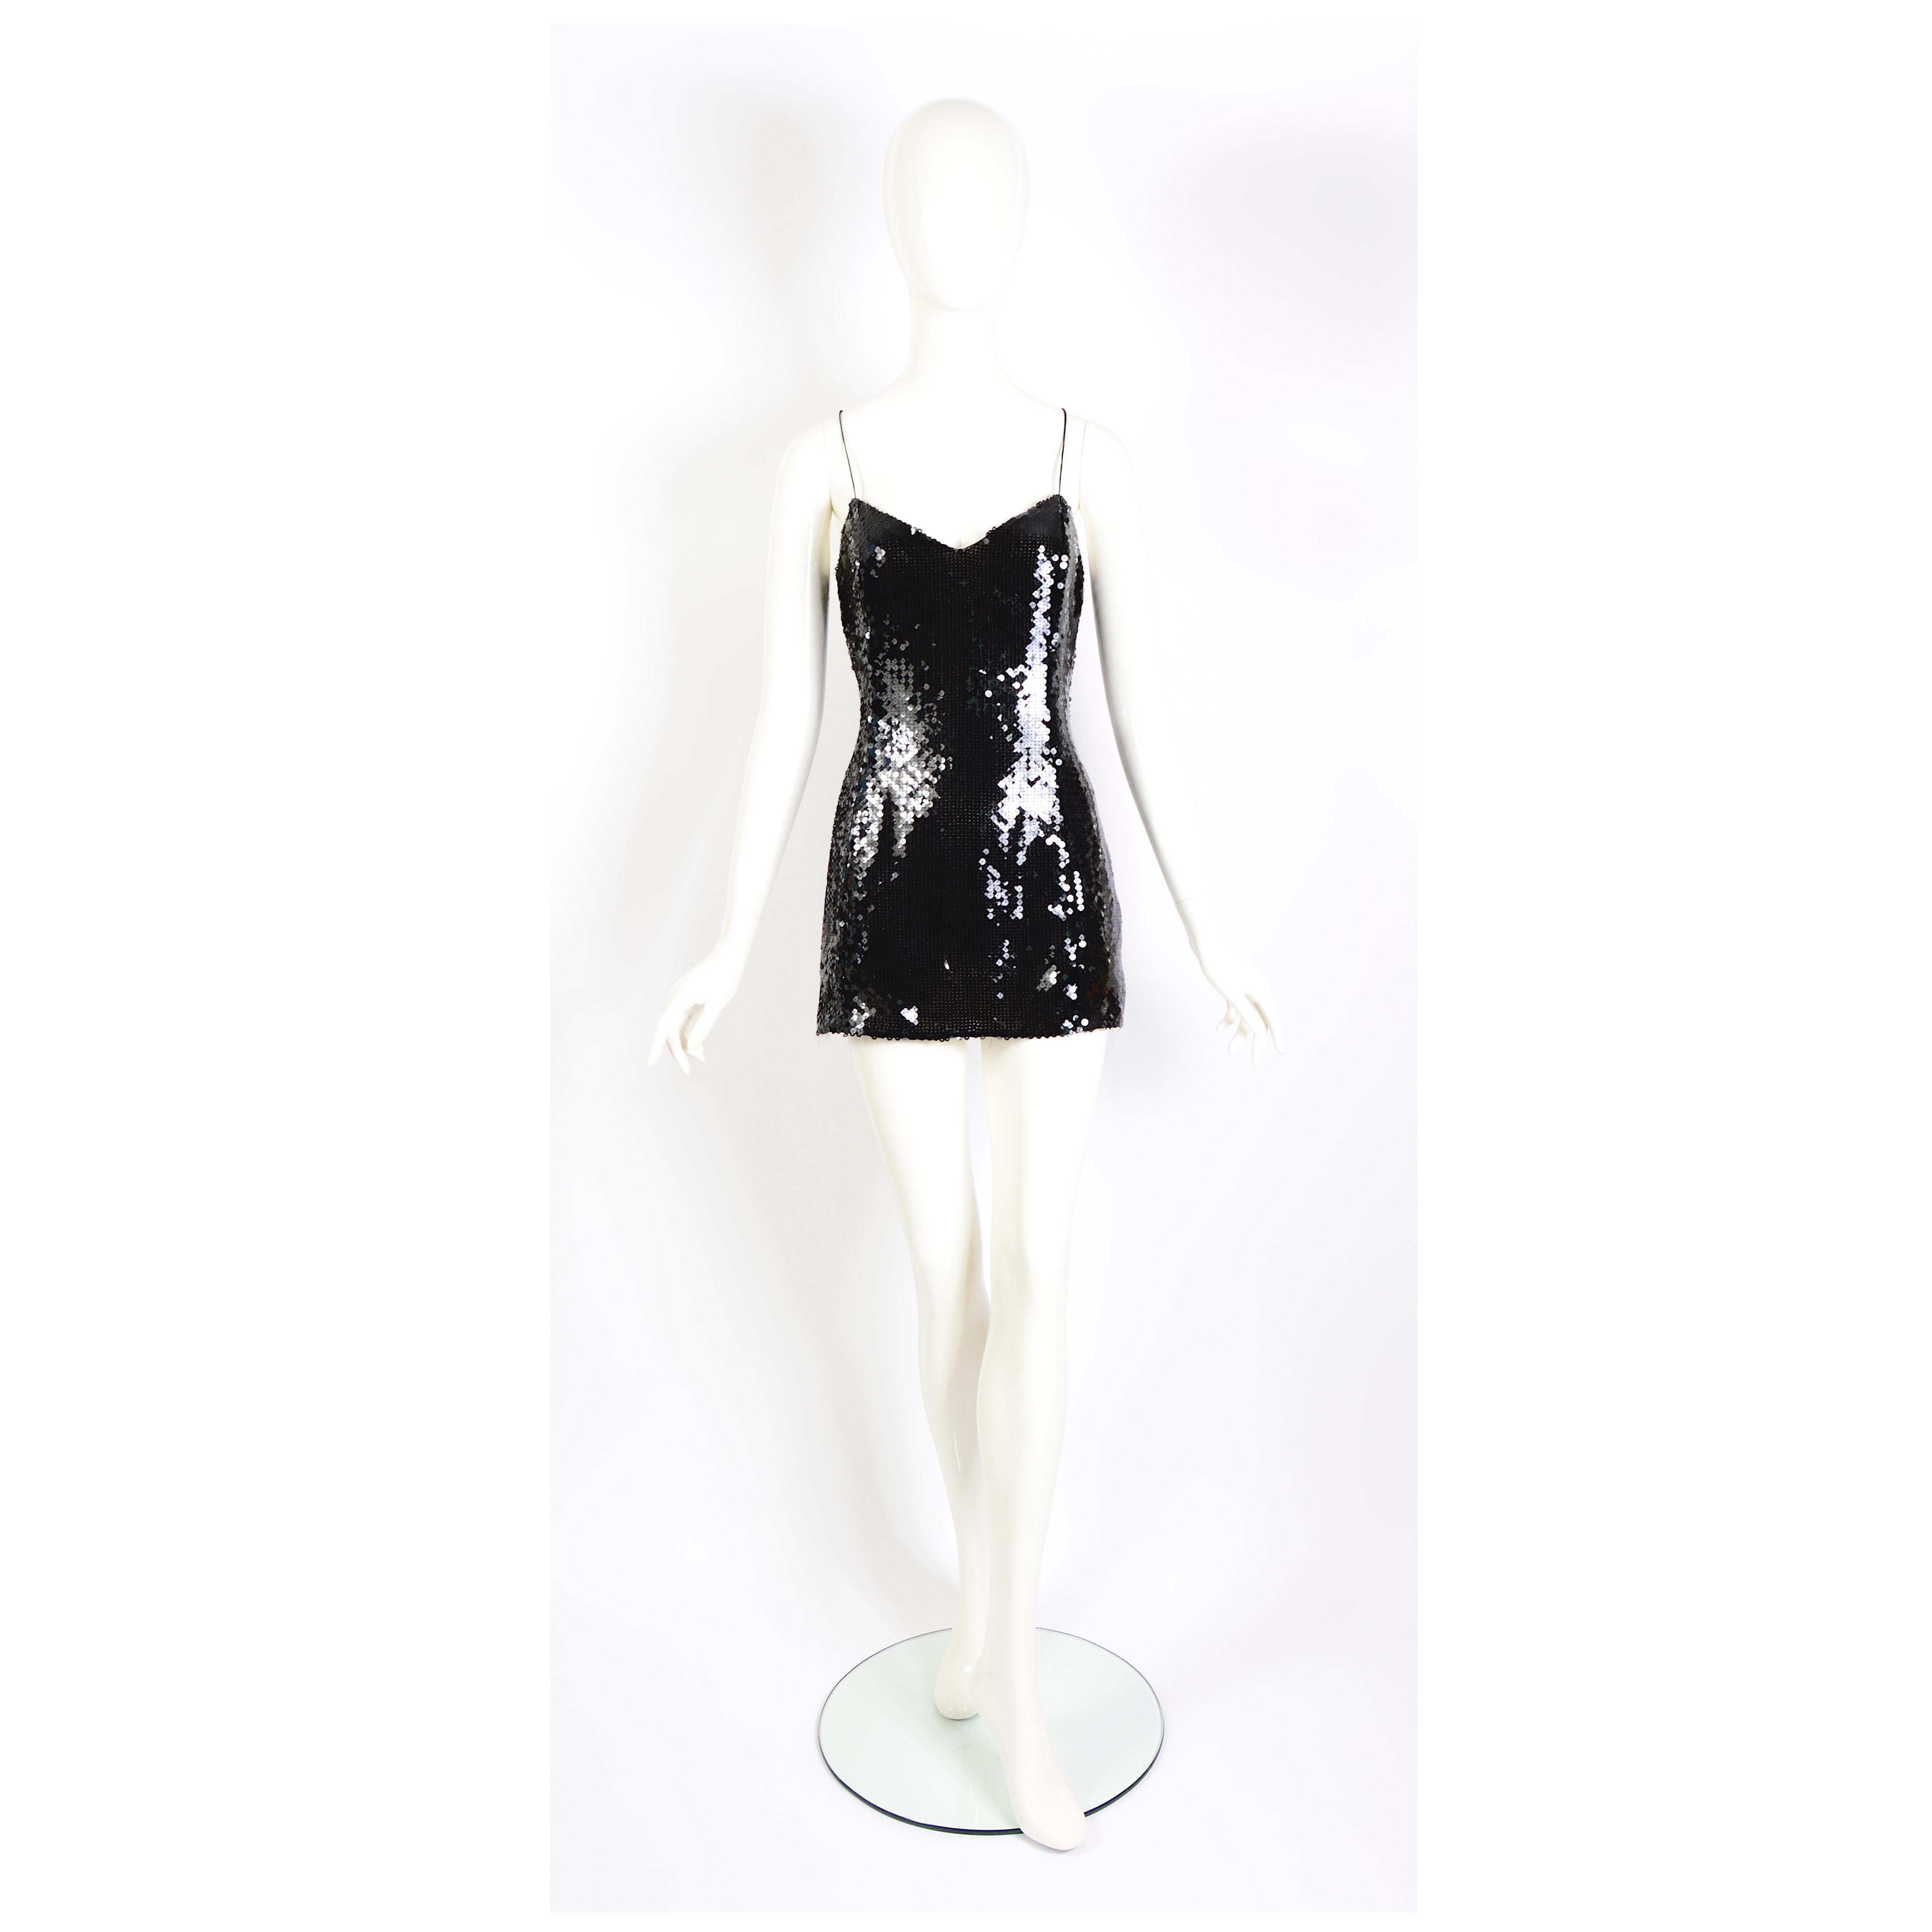 Adorable mini robe de soirée ou top léger comme une plume Thierry Mugler couture Nr 1K710 vintage des années 1990 à paillettes noires.
Entièrement doublé d'un tissu transparent en soie nude.
En bon état vintage, la fermeture éclair latérale de la